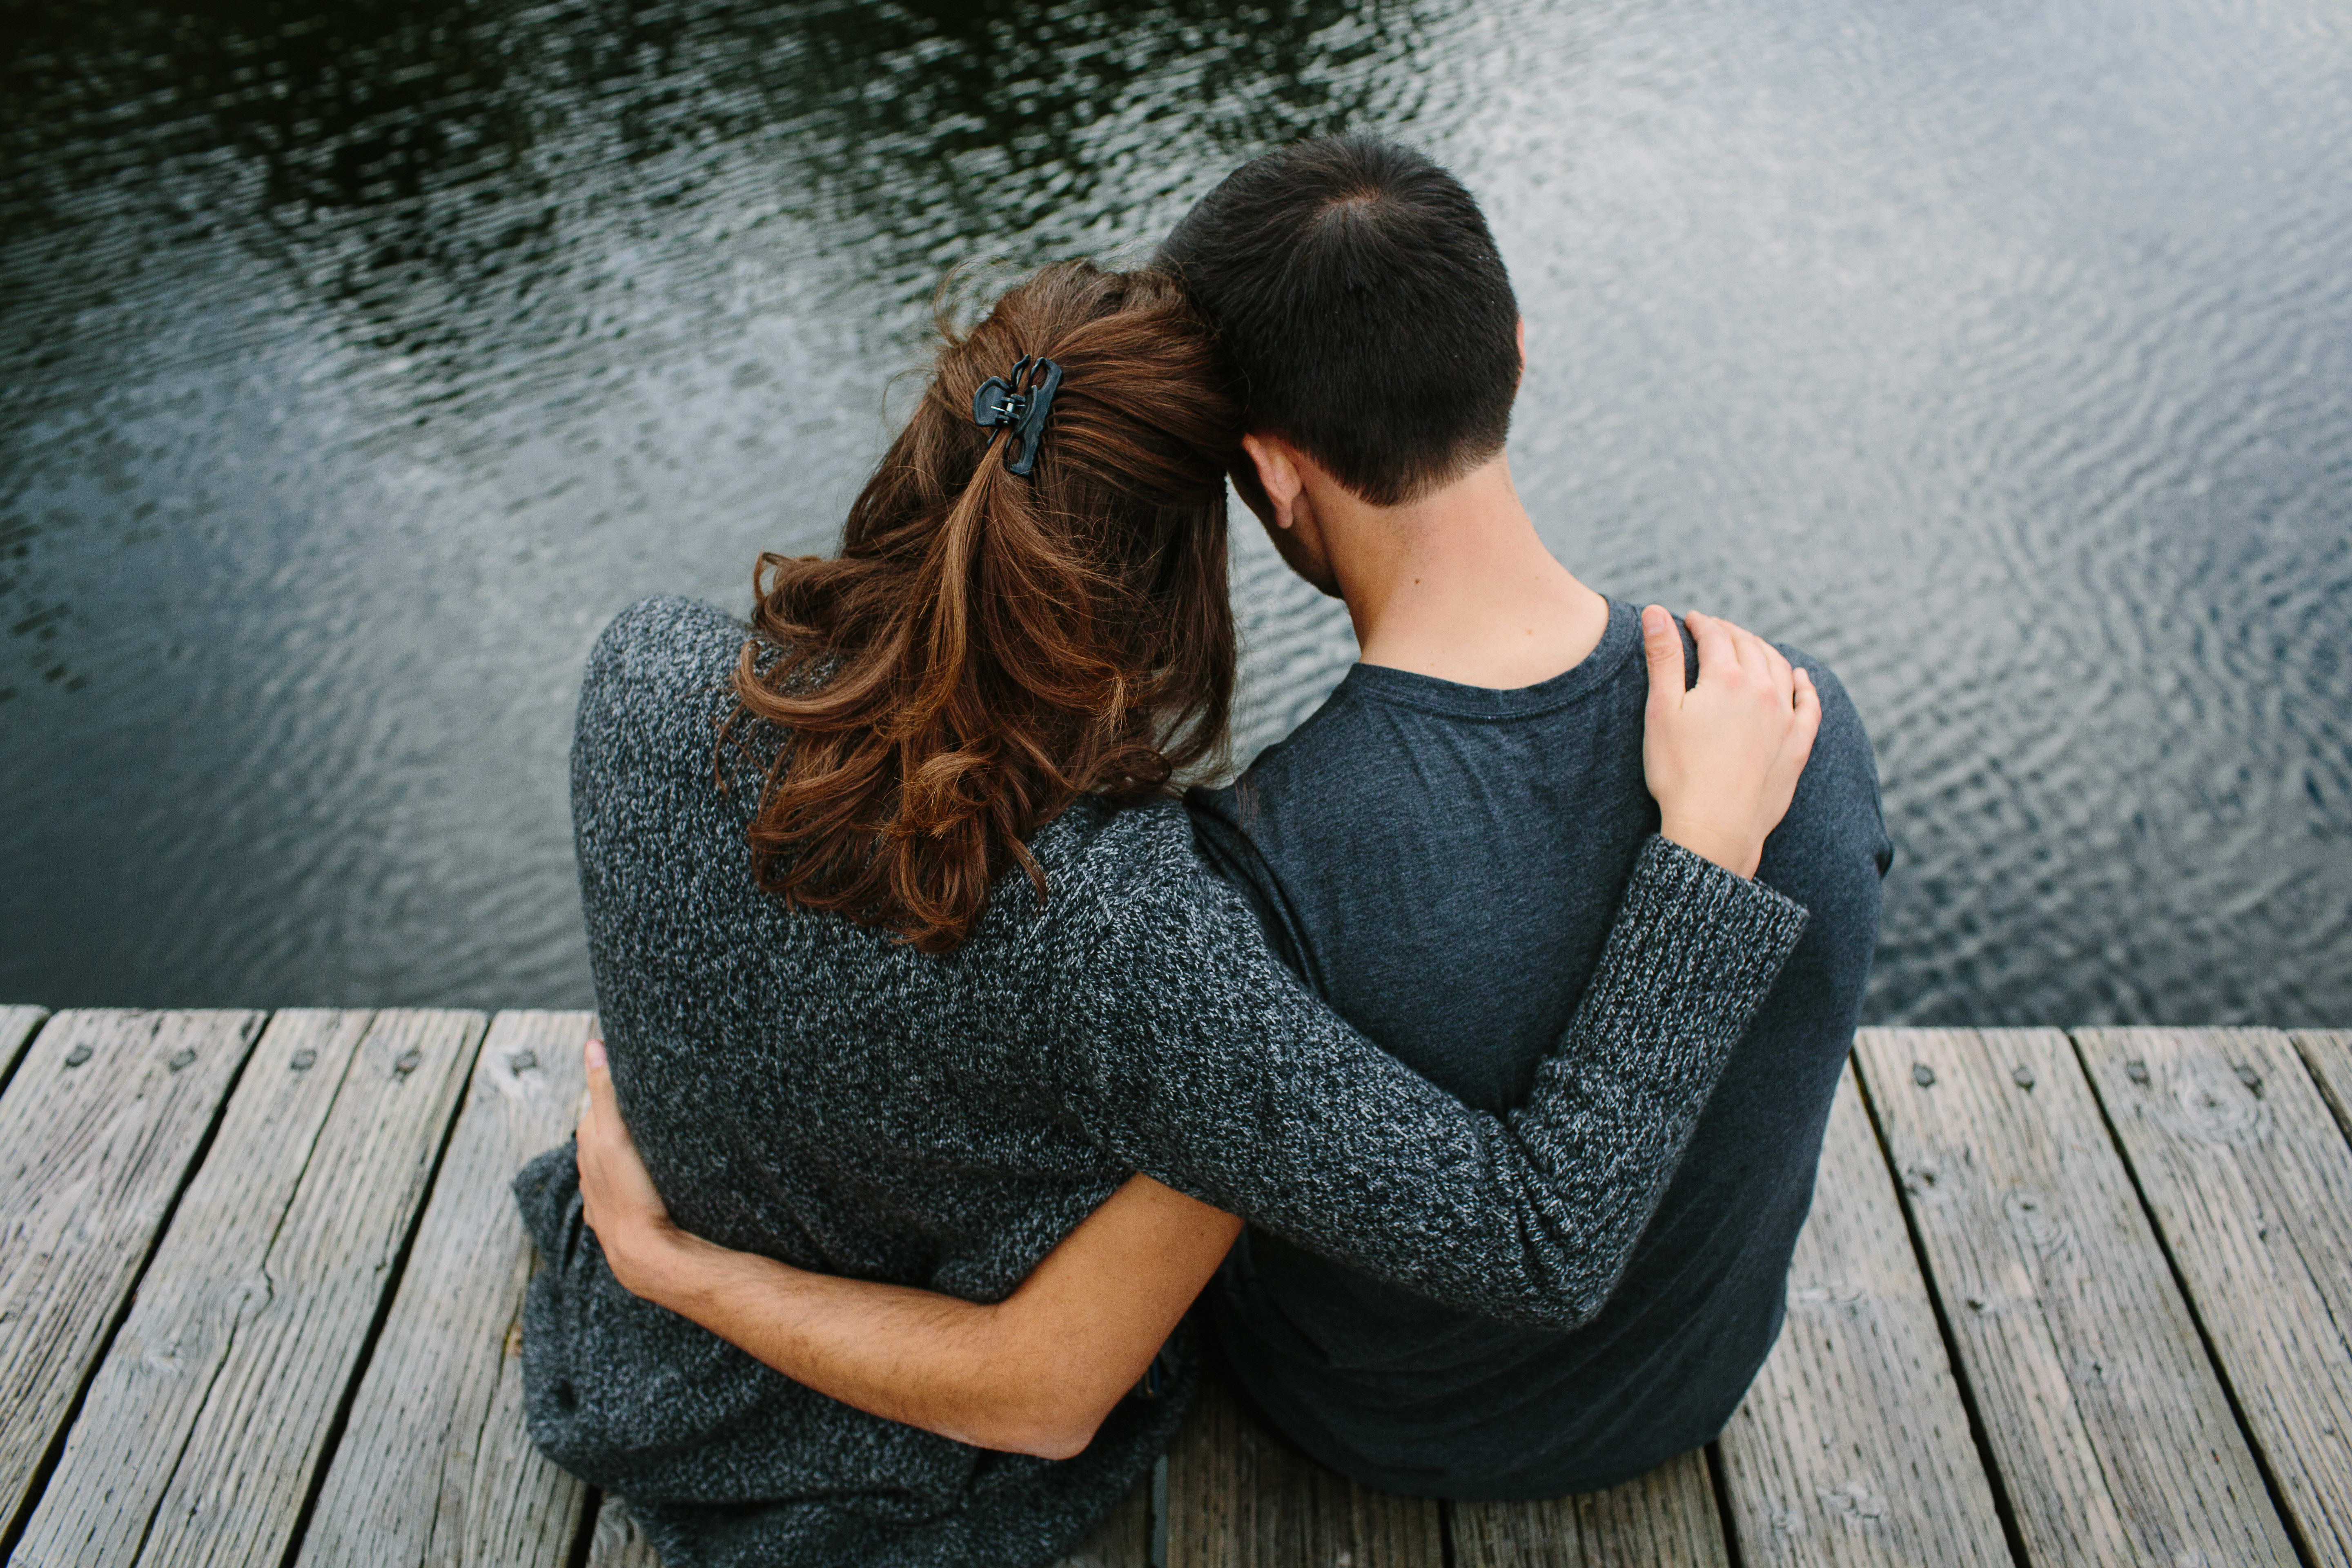 Foto eines kuschelnden Paares auf dem Pier | Quelle: Shutterstock